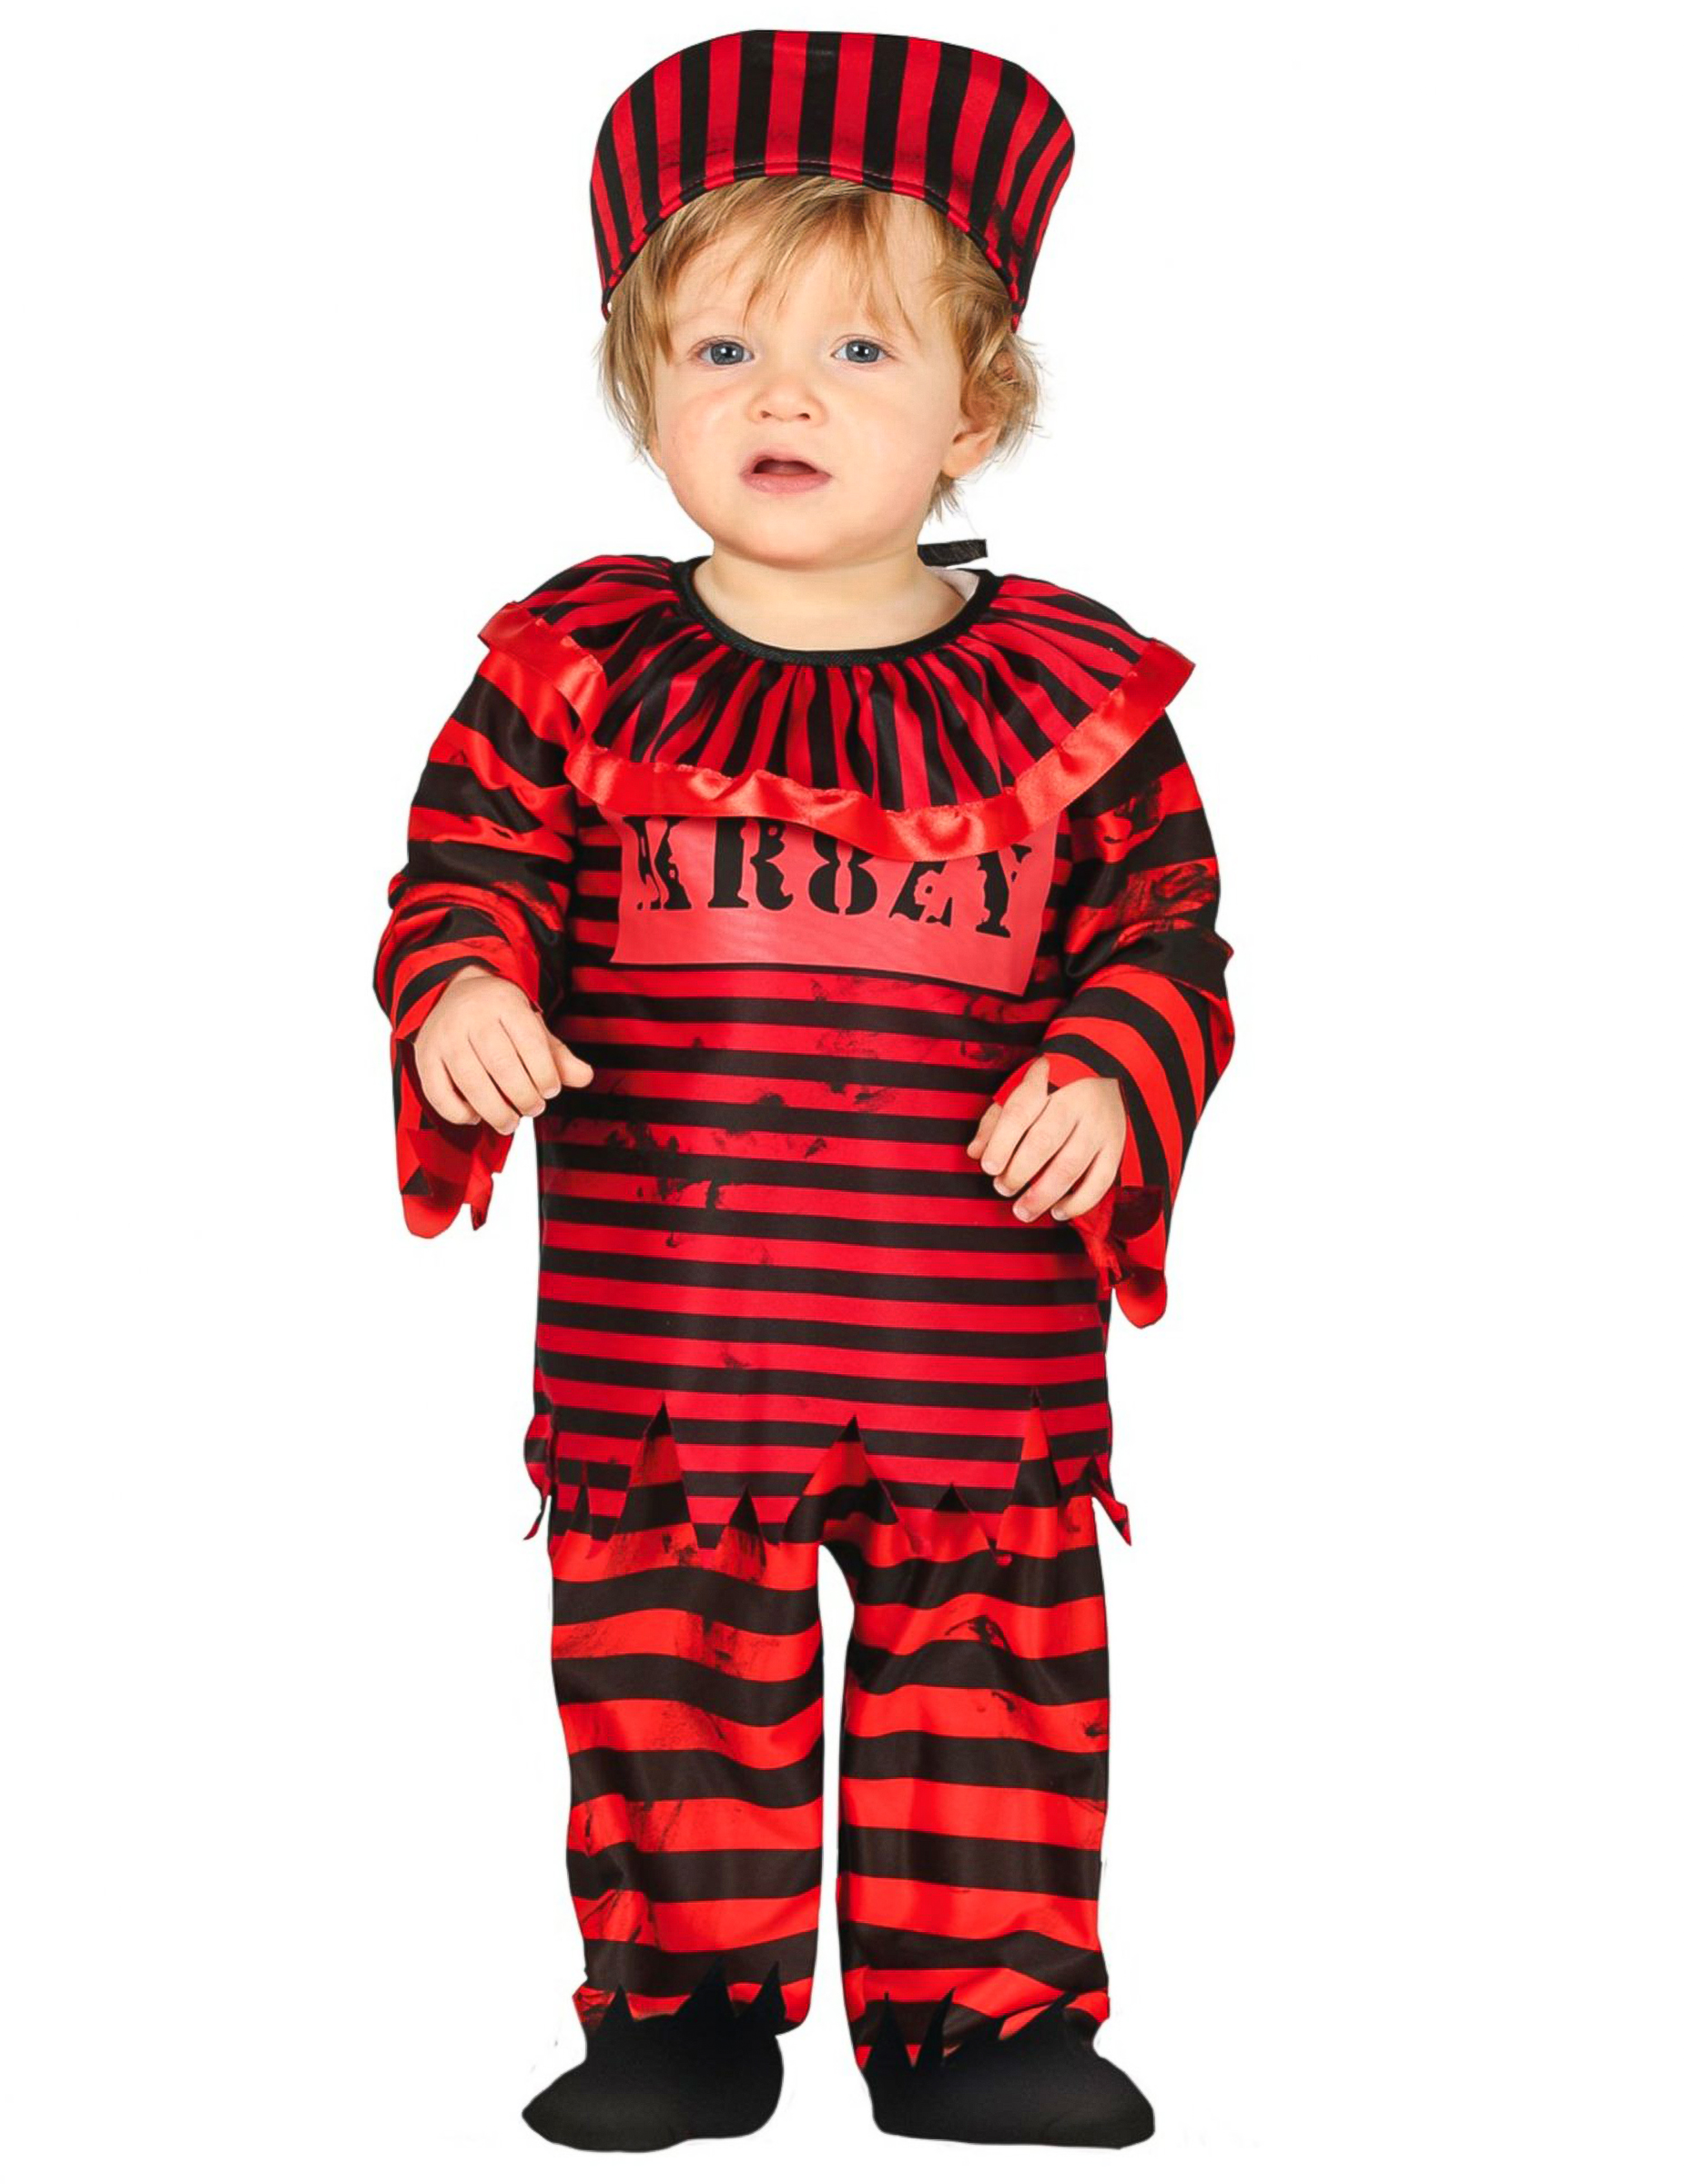 Verrückter Gefangener Babykostüm für Halloween schwarz-rot von FIESTAS GUIRCA, S.L.